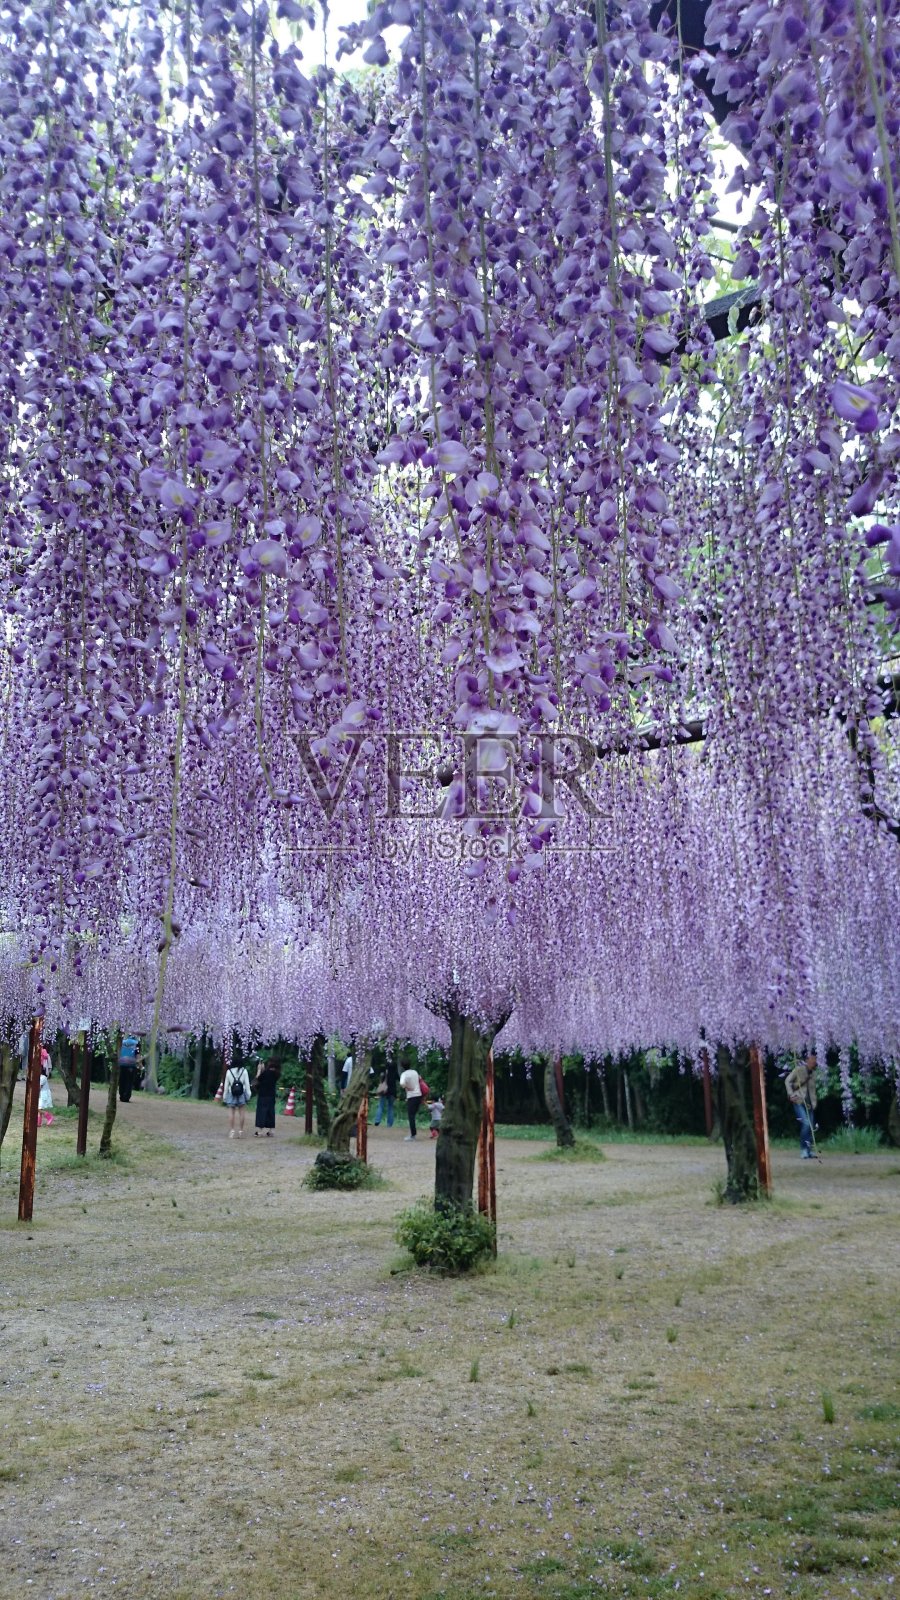 紫藤花铺满了整个视野照片摄影图片